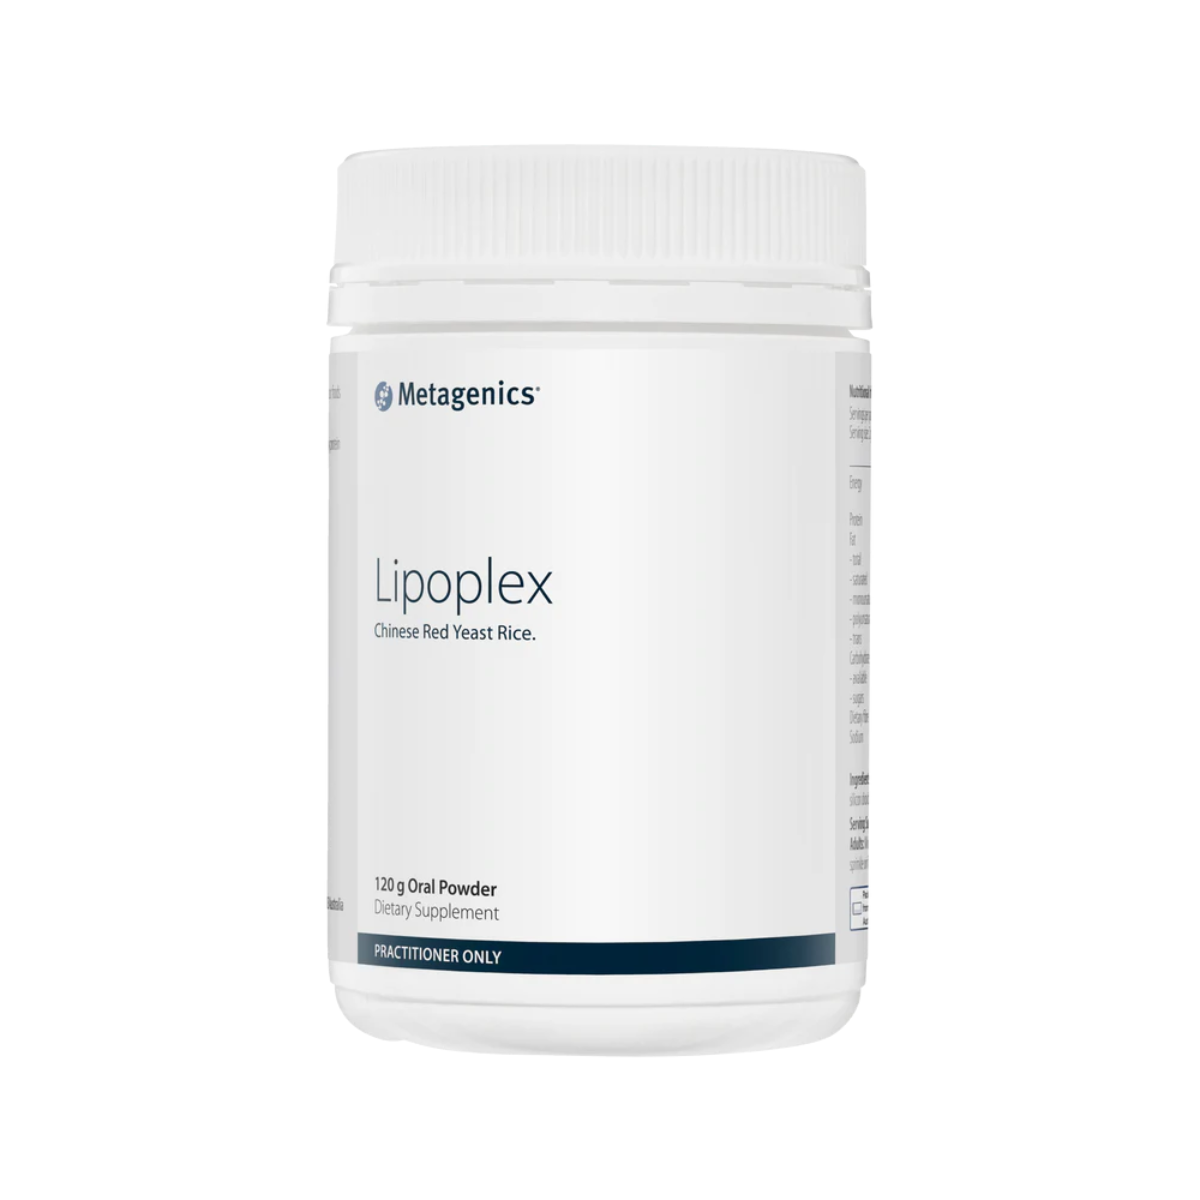 Metagenics Lipoplex Powder 120g